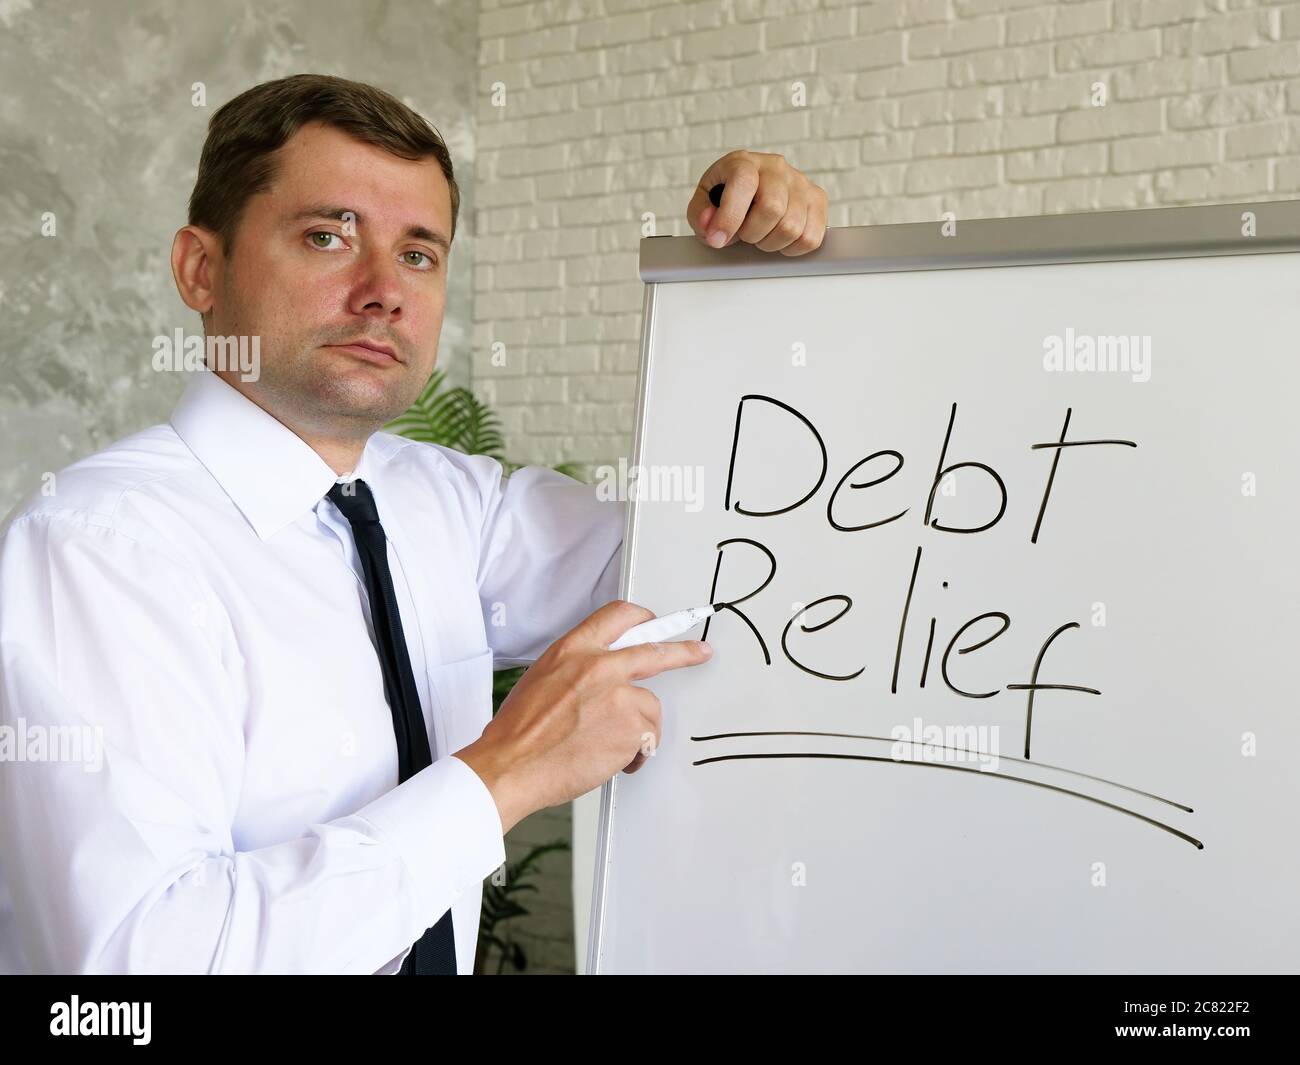 Der Manager spricht über Schuldenerlass in einer Bank. Stockfoto